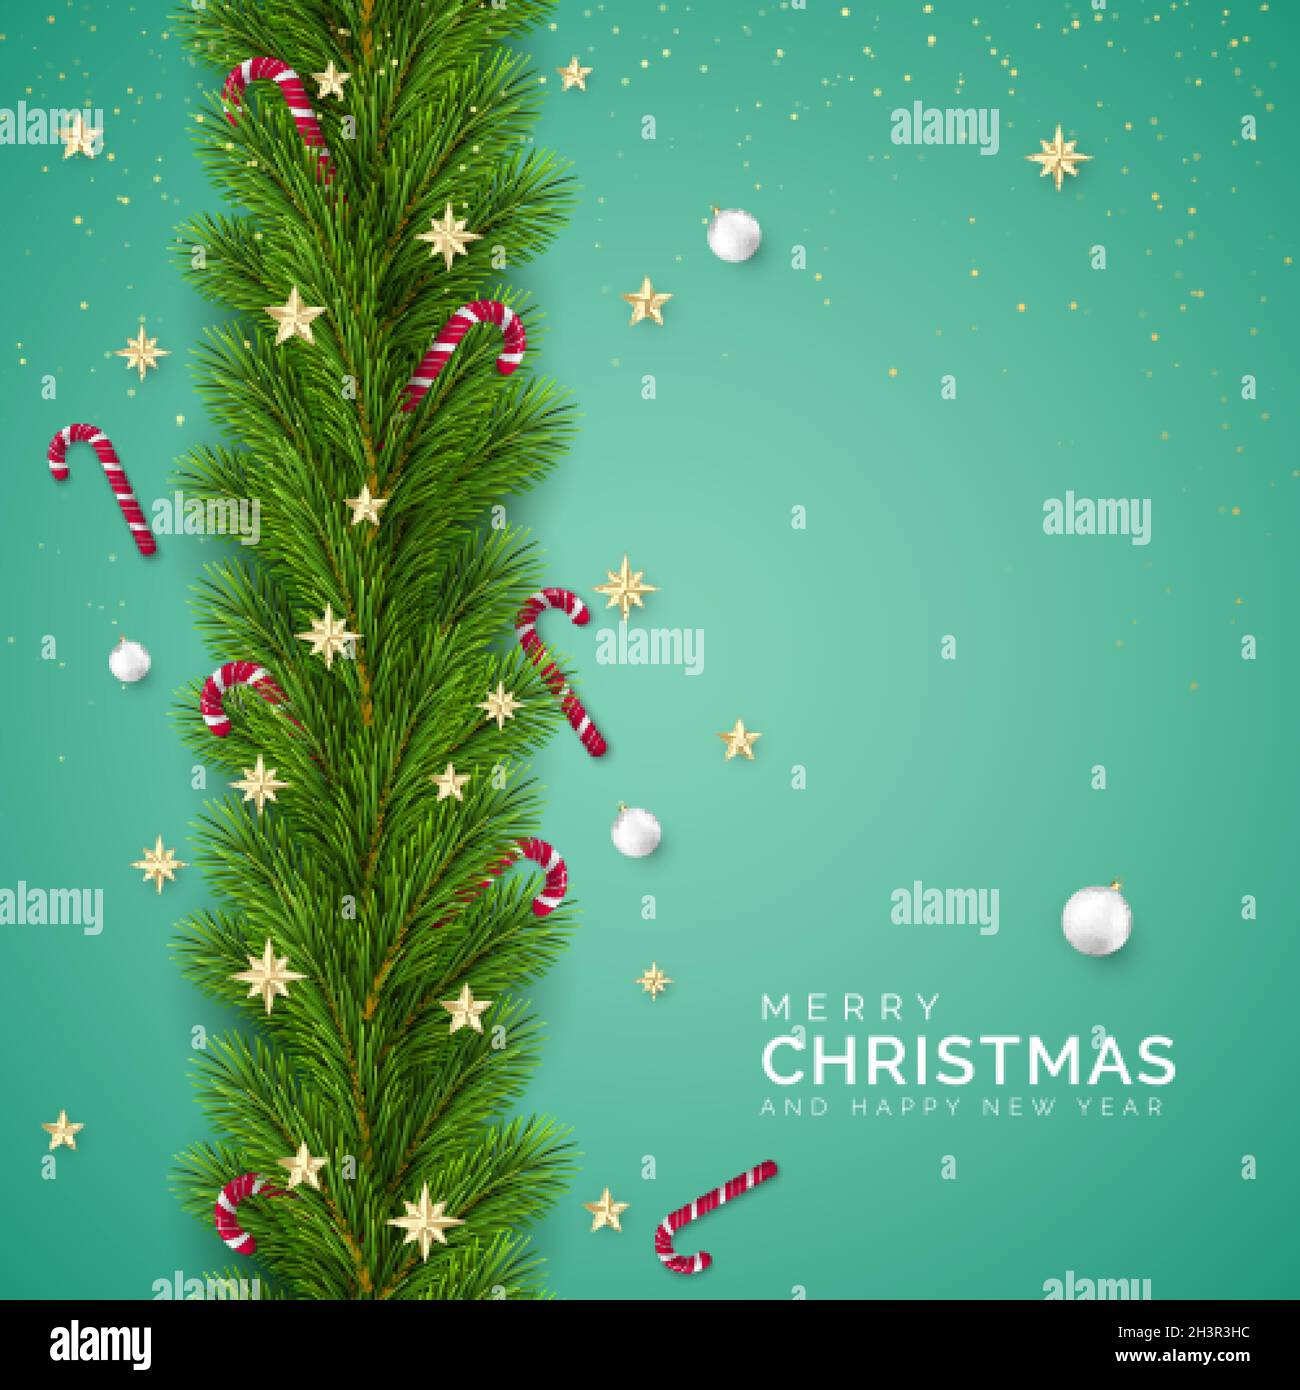 Rami dell'albero di Natale decorati con stelle d'oro e fiocchi di neve, caramelle e palline bianche di Natale. Elemento di decorazione di festa con i desideri. VEC Illustrazione Vettoriale